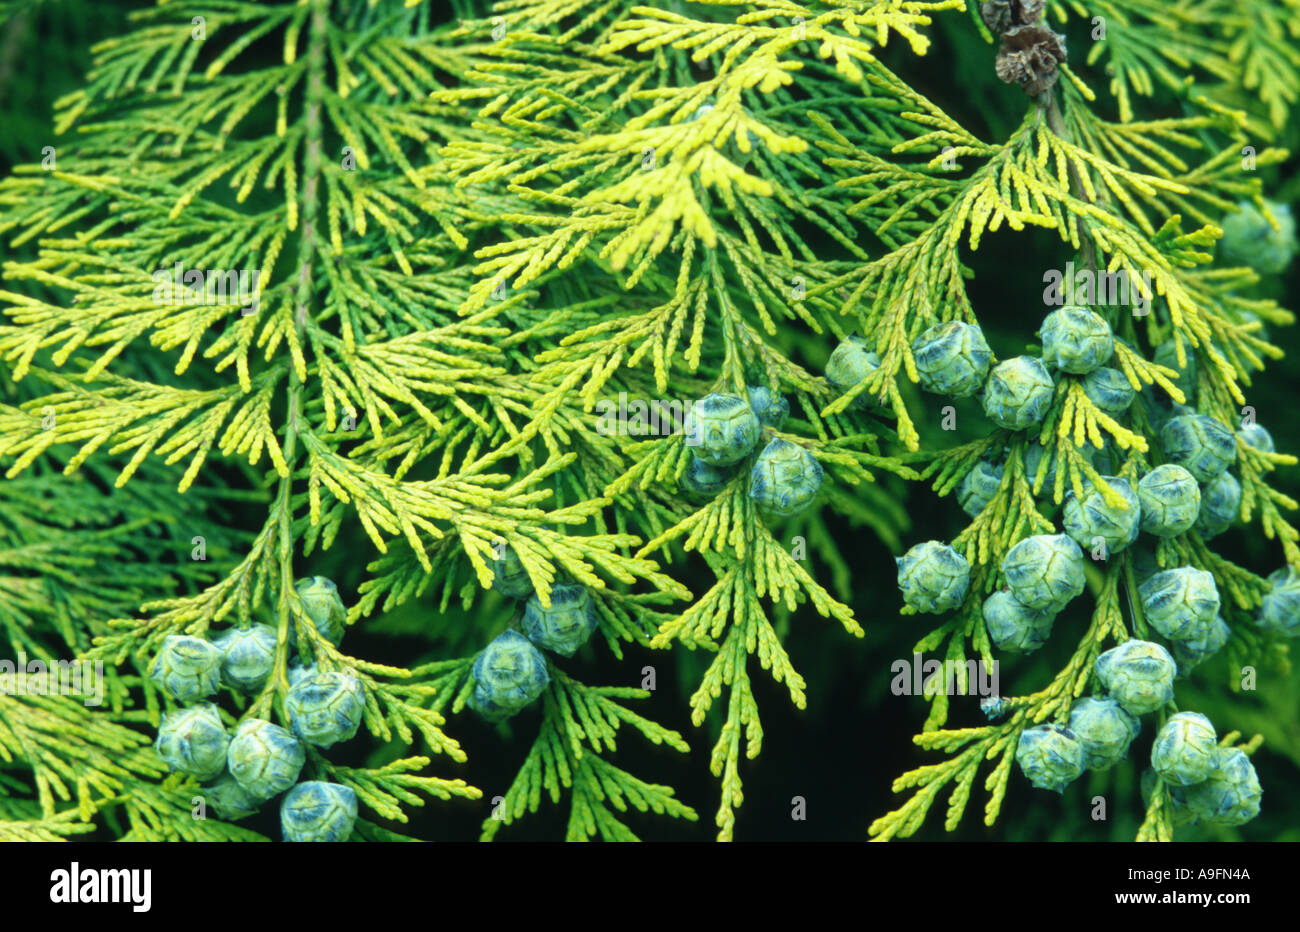 Lawson cypress, Port Orford cedar (Chamaecyparis lawsoniana), twig with cones Stock Photo